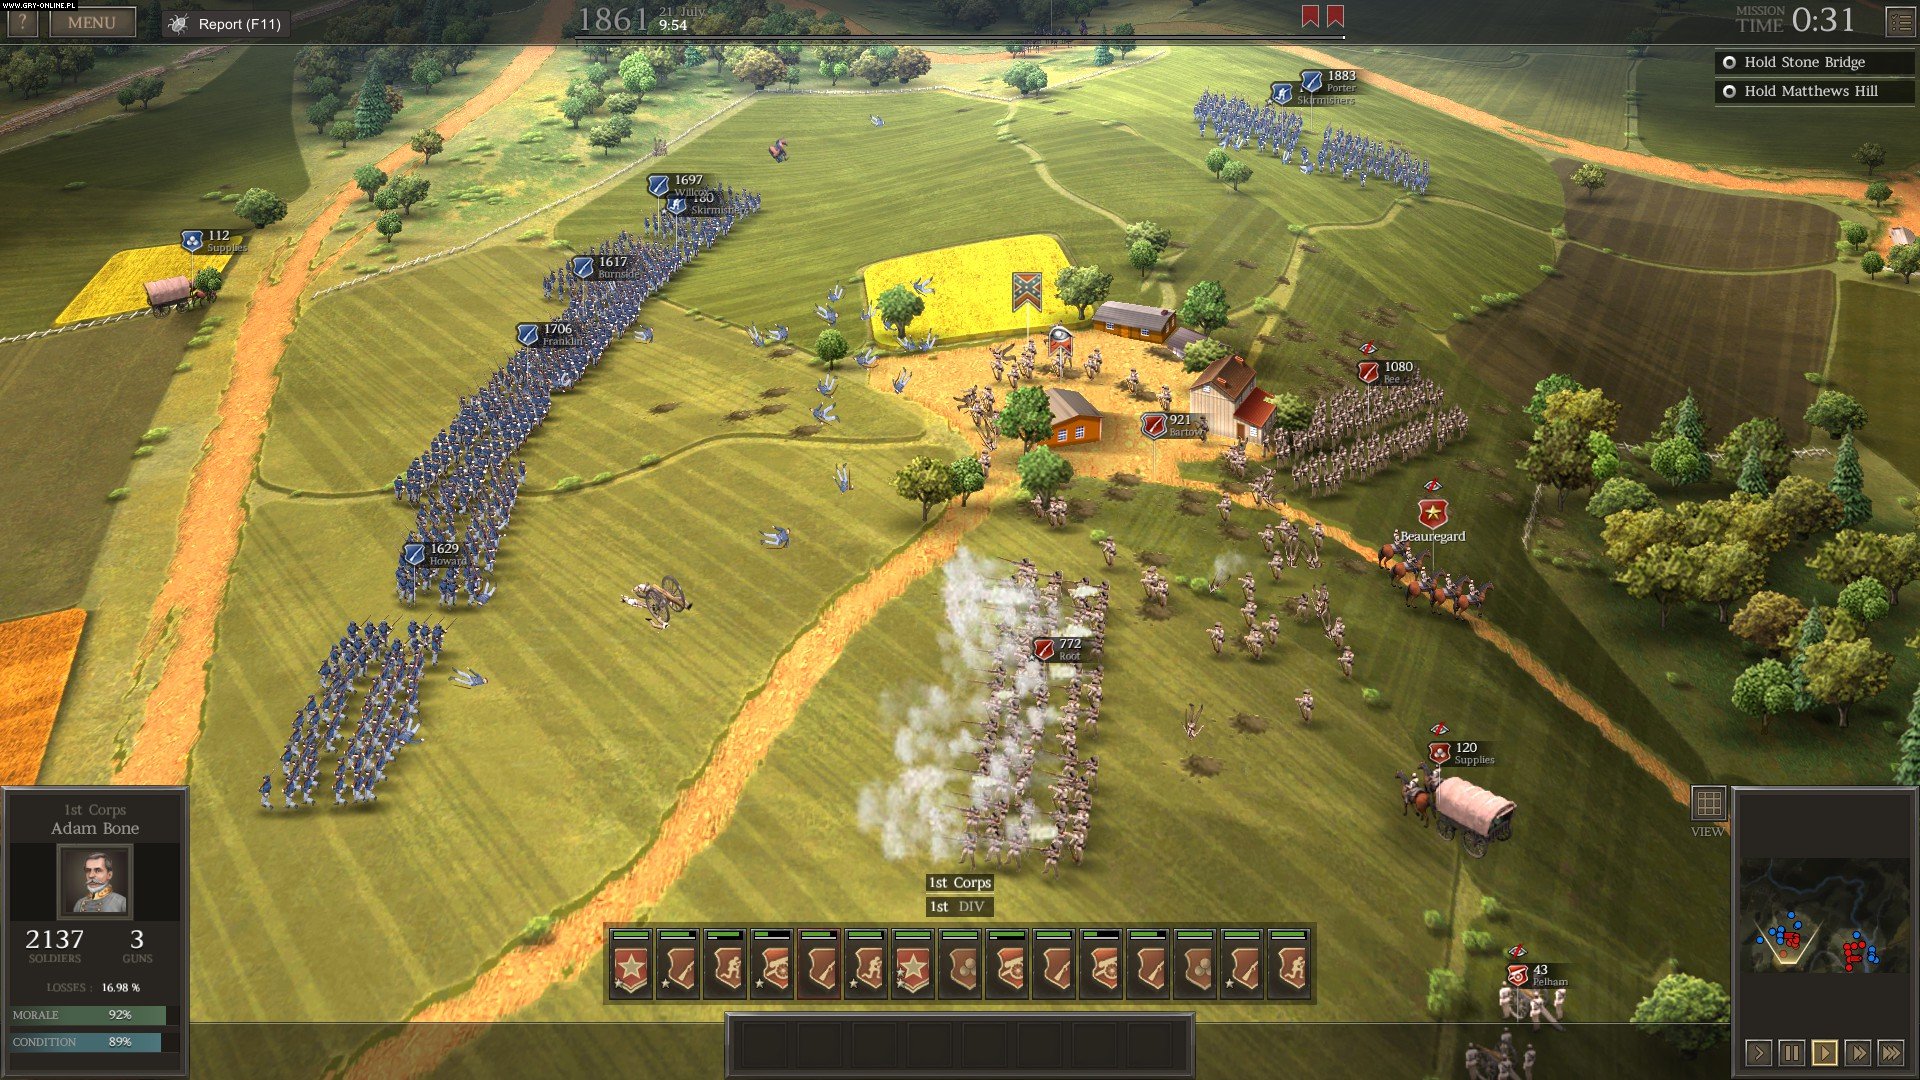 civil war the game download